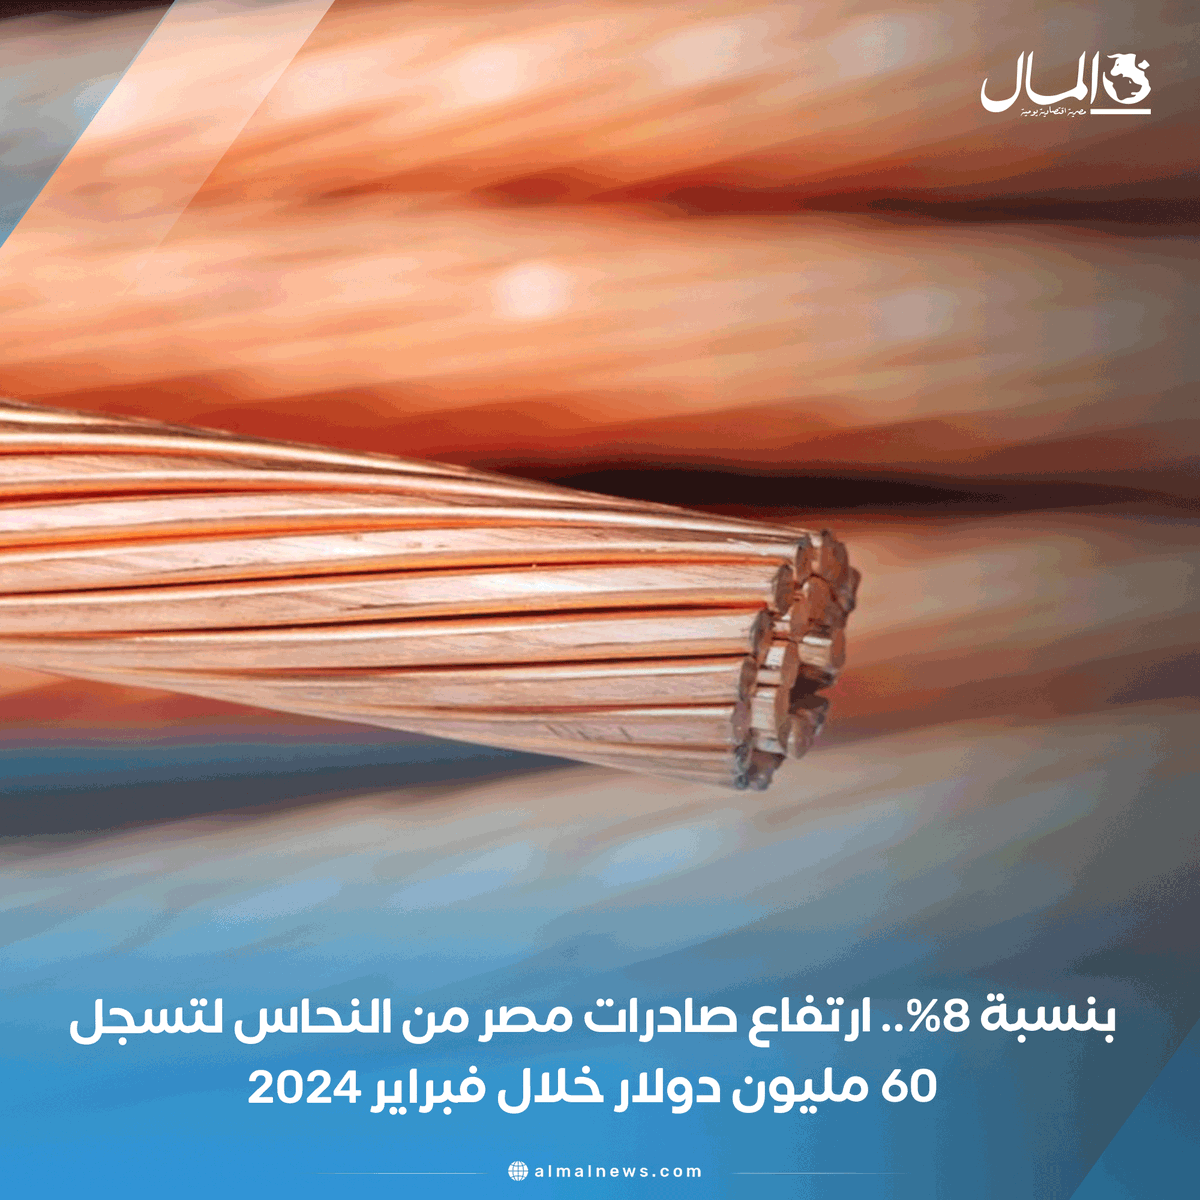 بنسبة 8%.. ارتفاع صادرات مصر من النحاس لتسجل 60 مليون دولار خلال فبراير 2024 